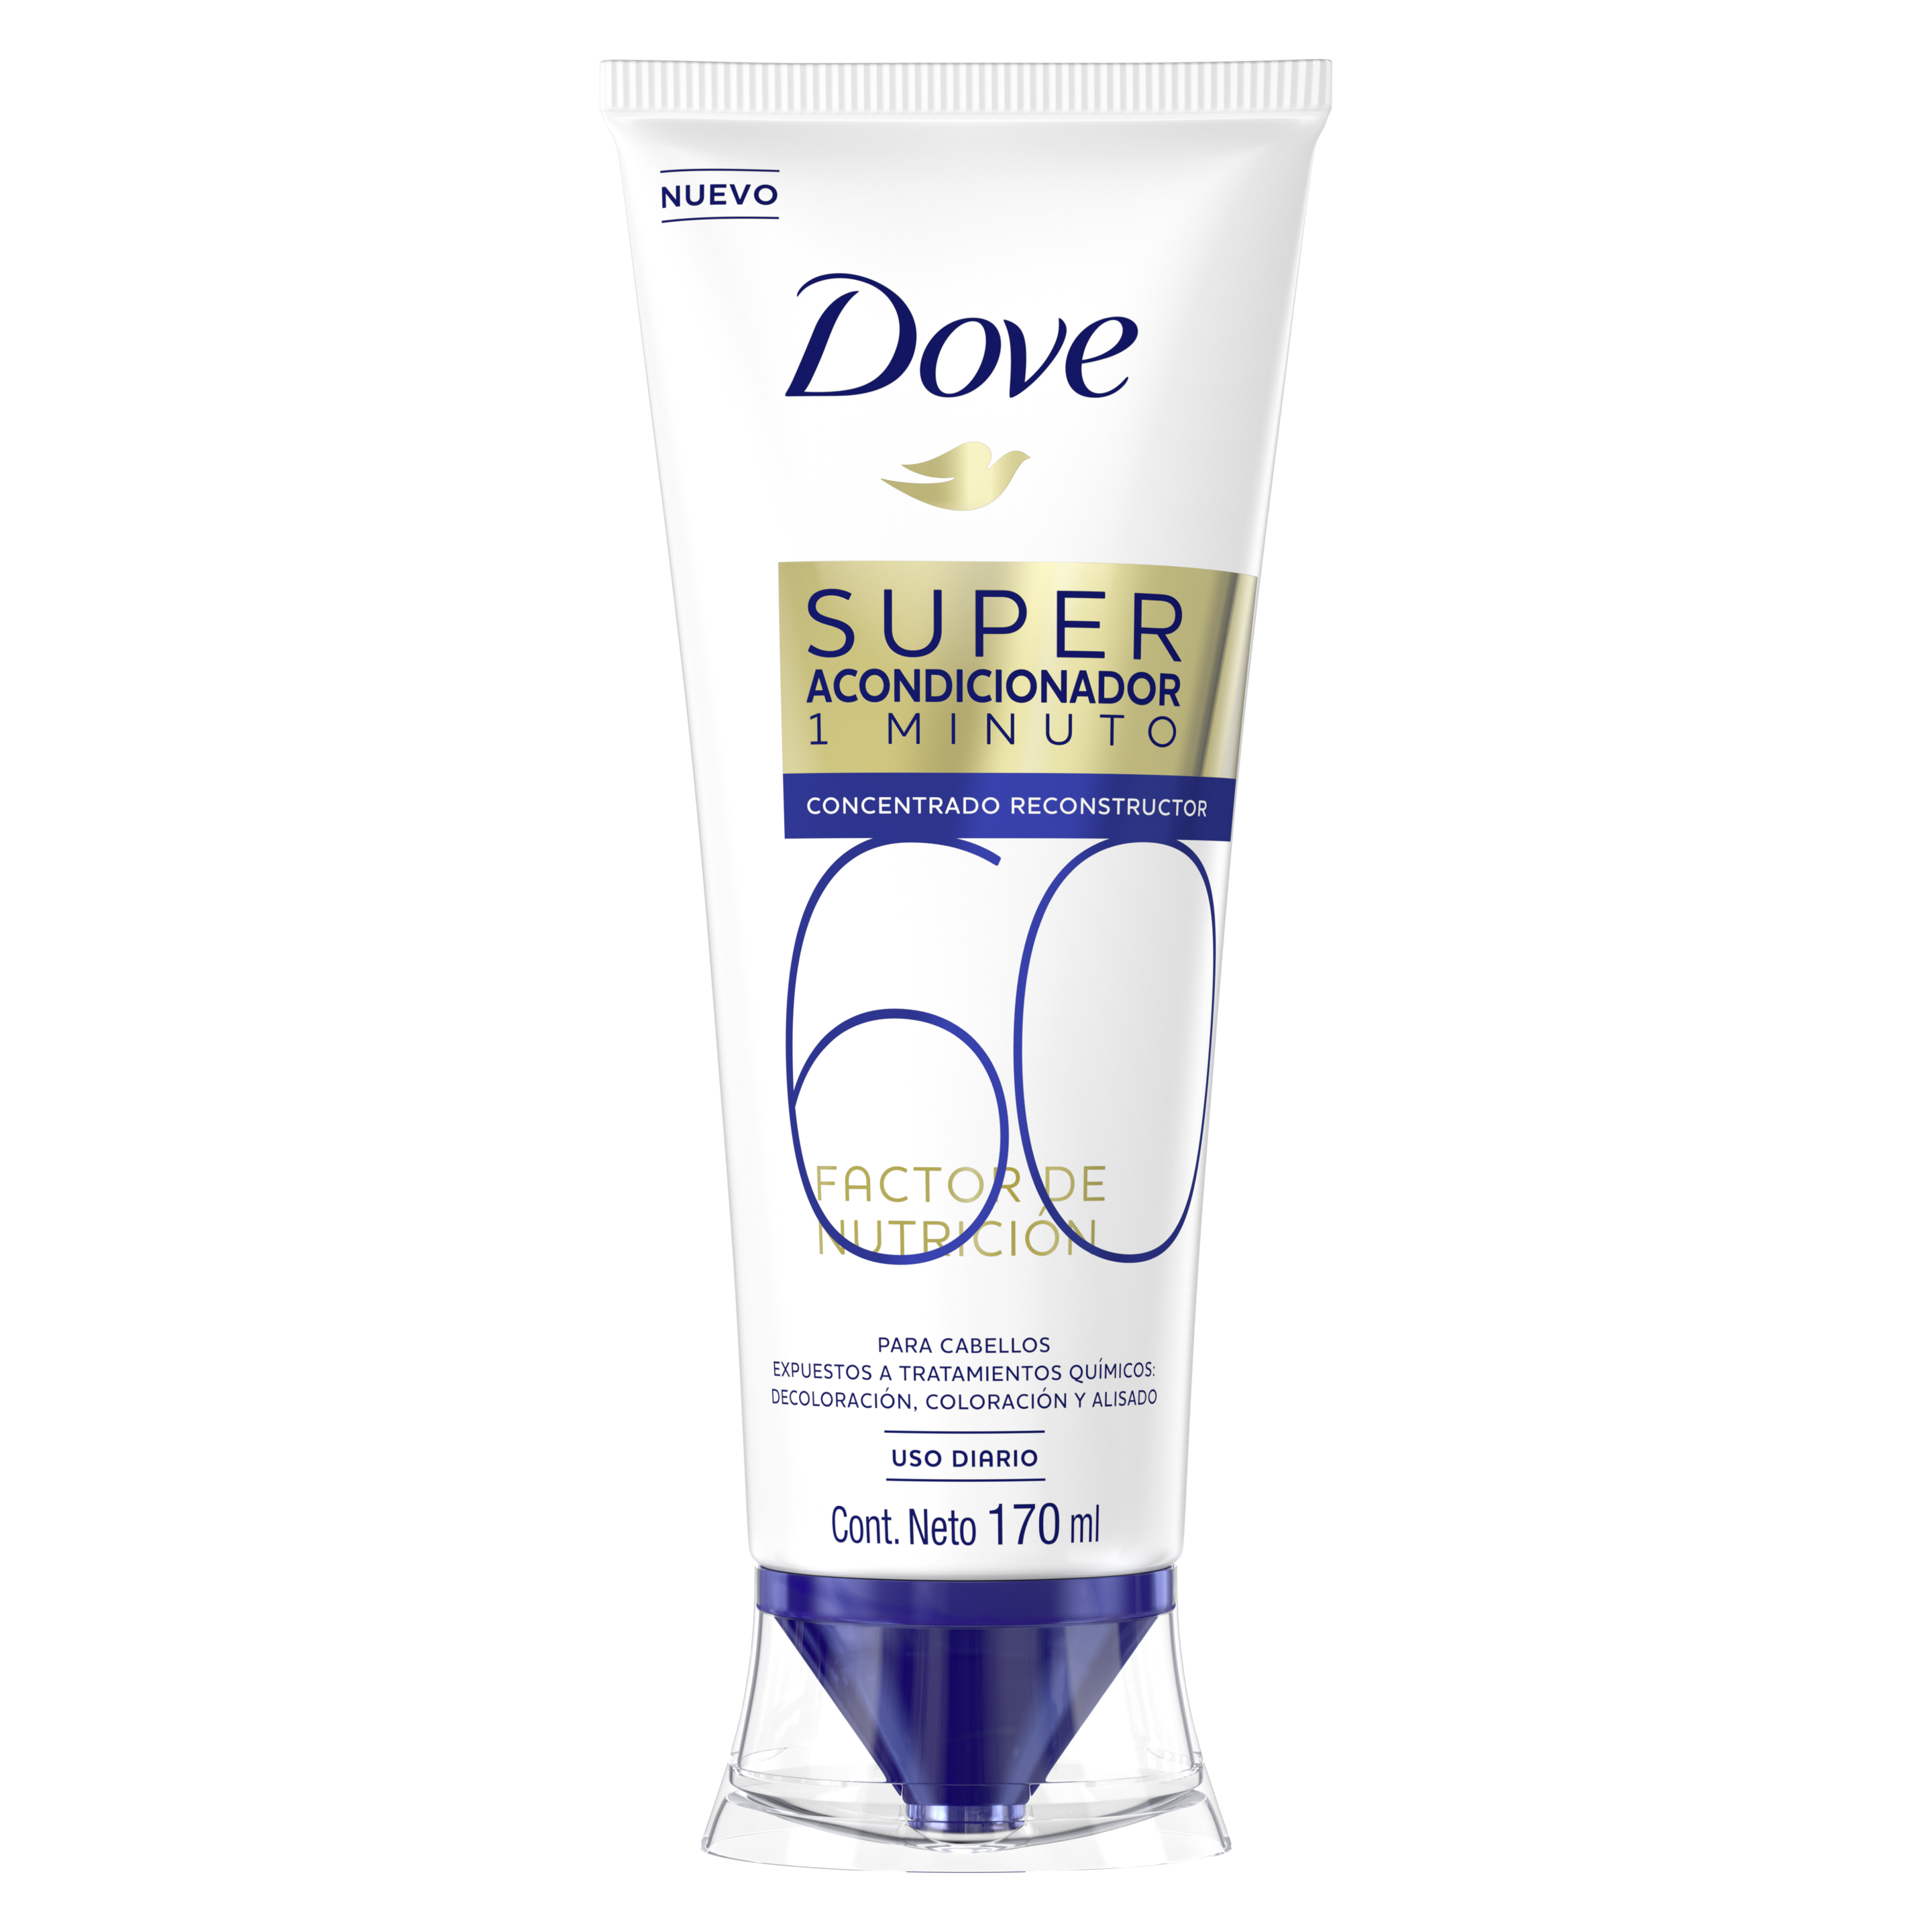 Dove Super Acondicionador 1 minuto Factor de Nutrición 60